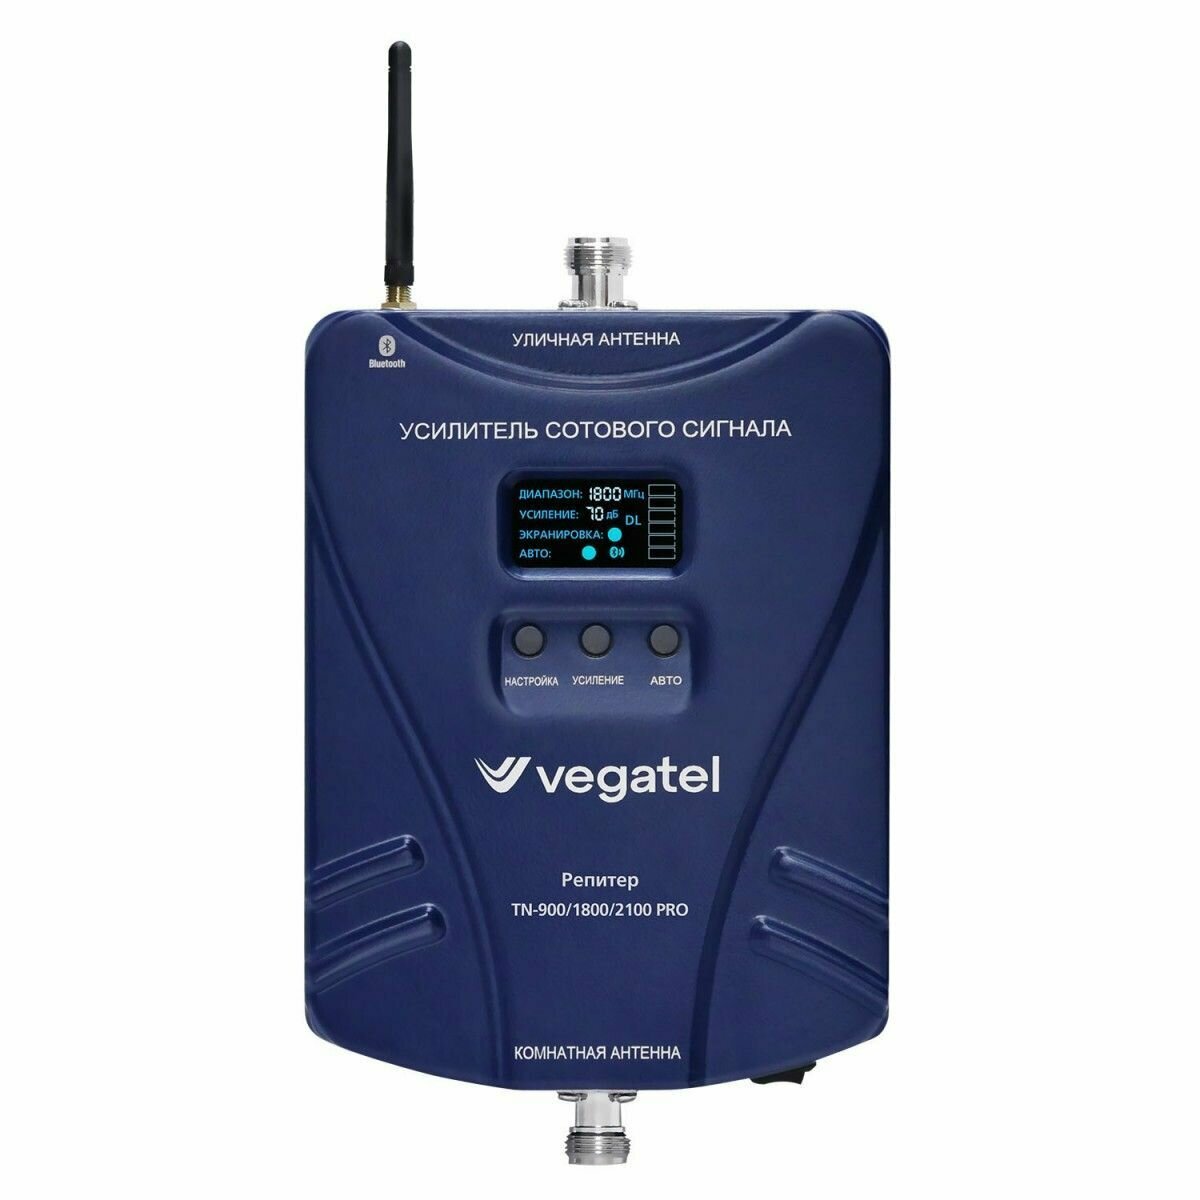 Репитер трехдиапазонный Vegatel tn 900 1800 2100 pro led